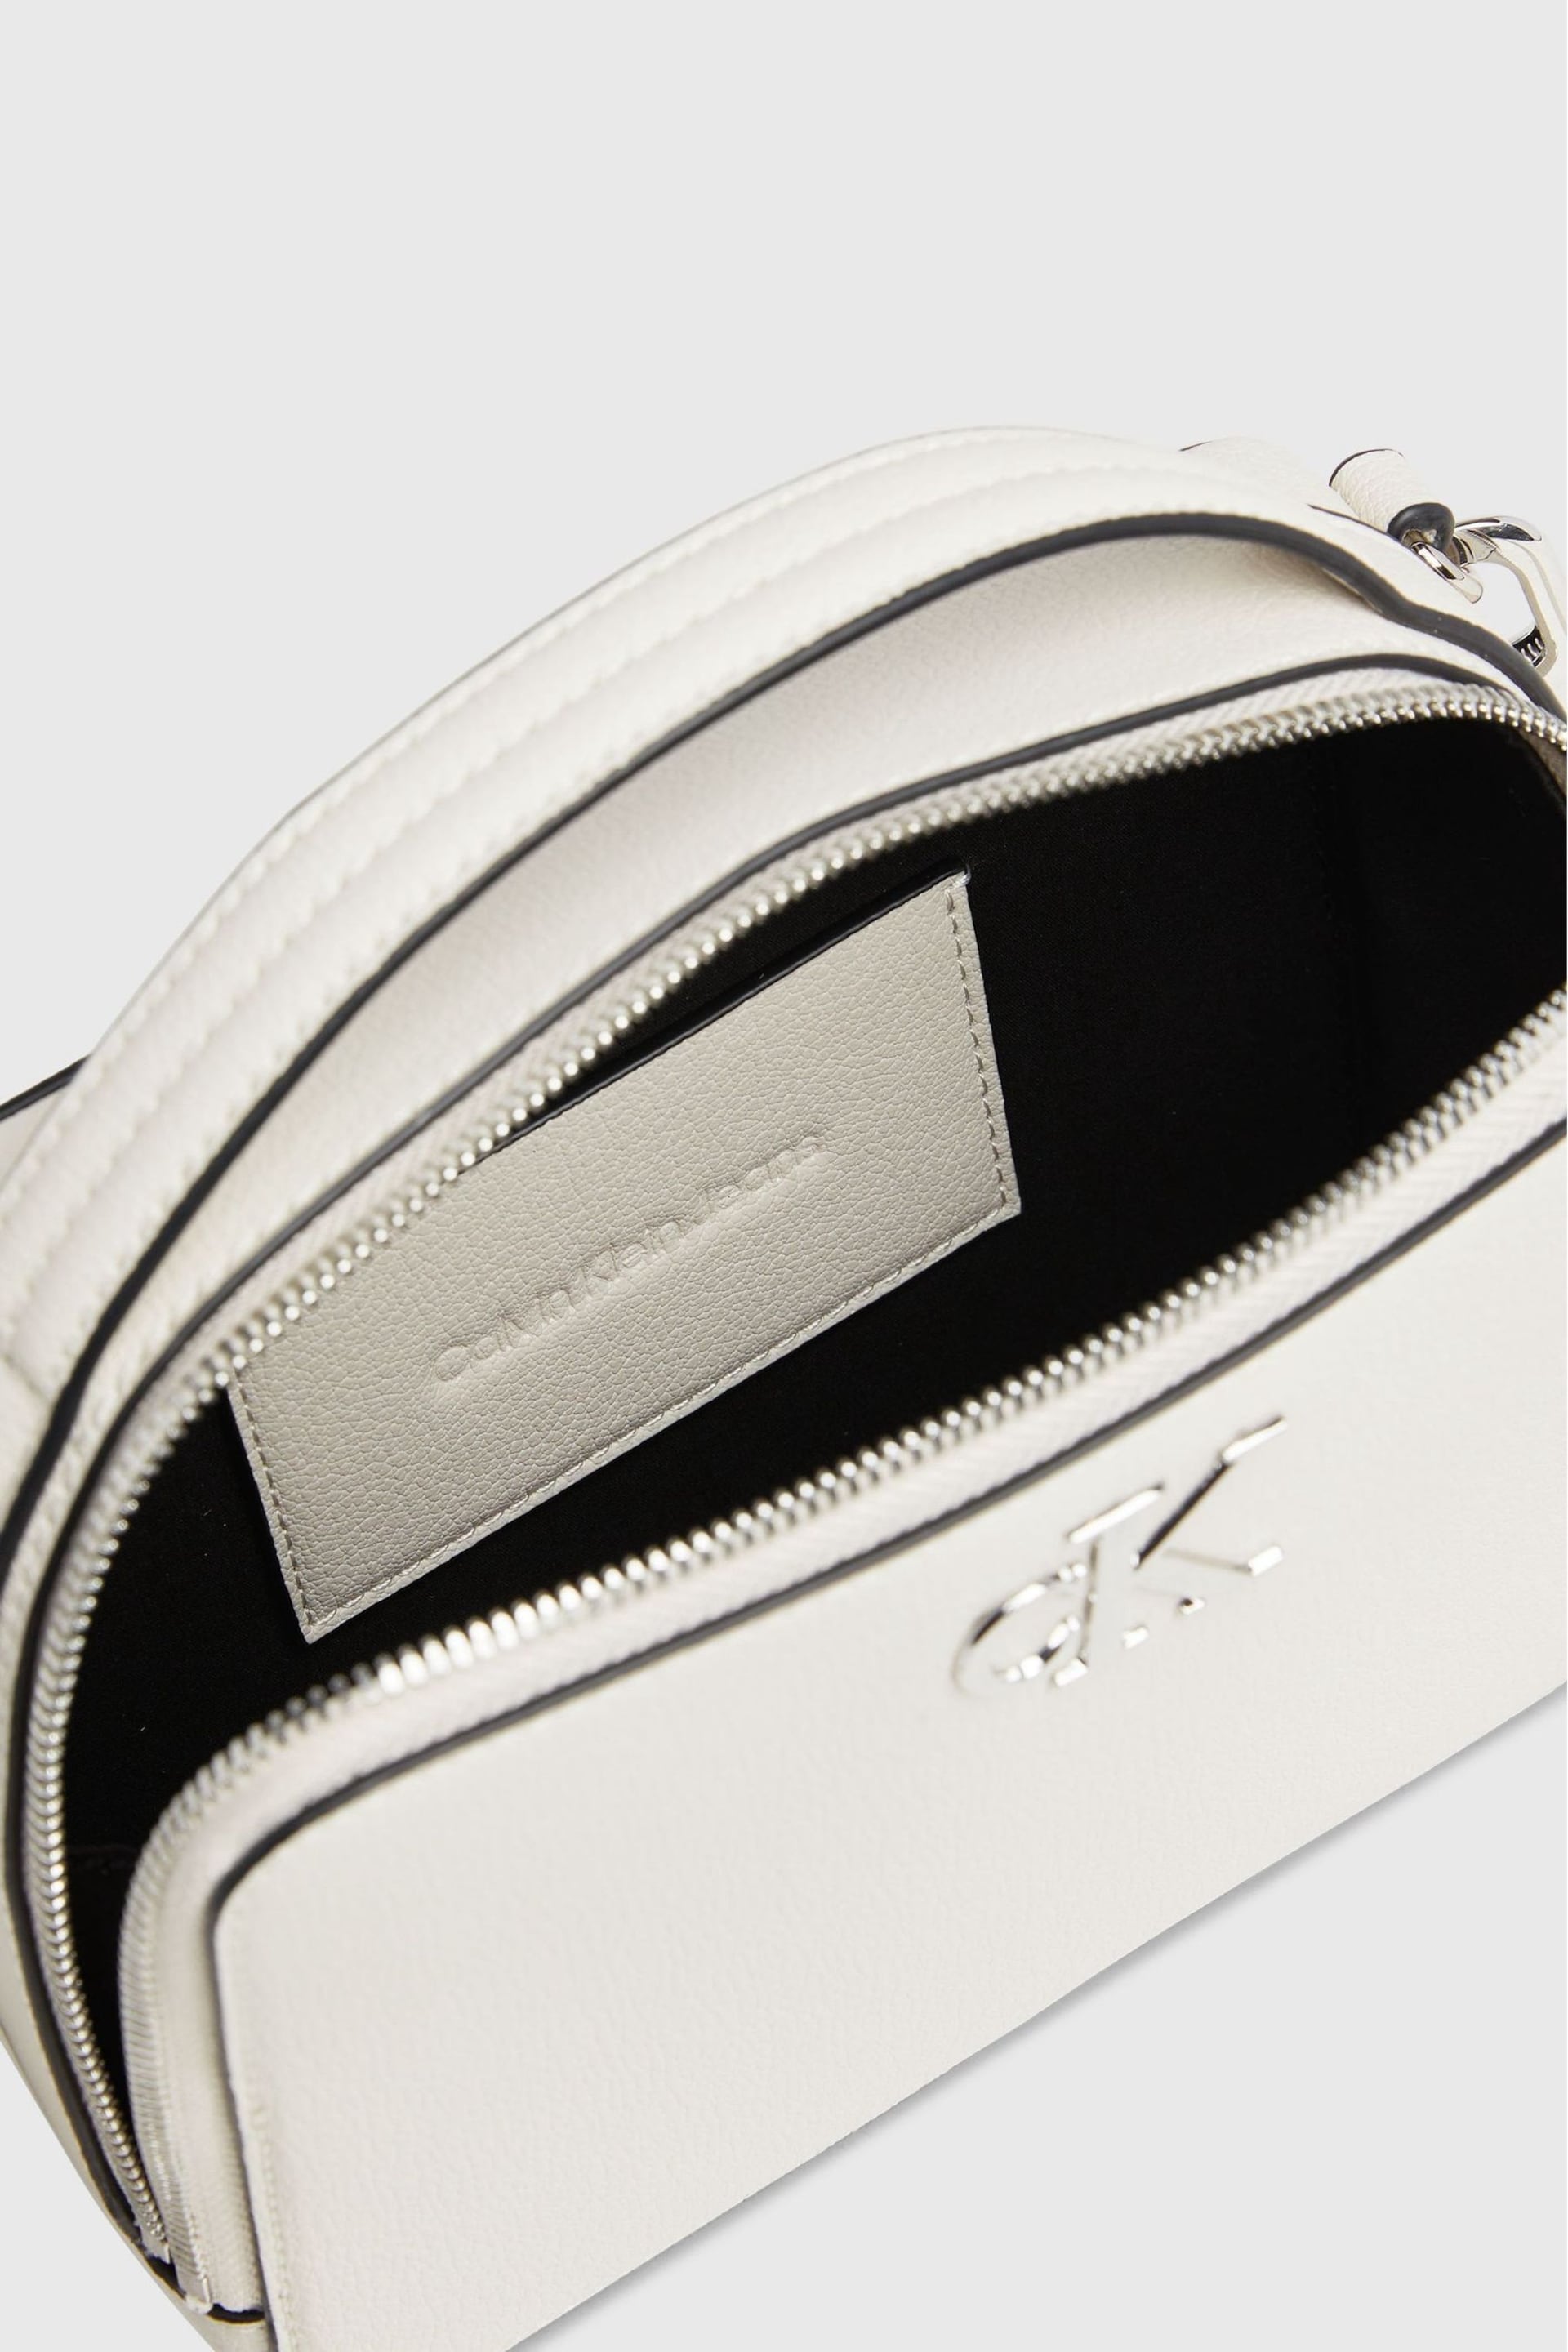 Calvin Klein White Minimal Monogram Camera Bag - Image 5 of 5